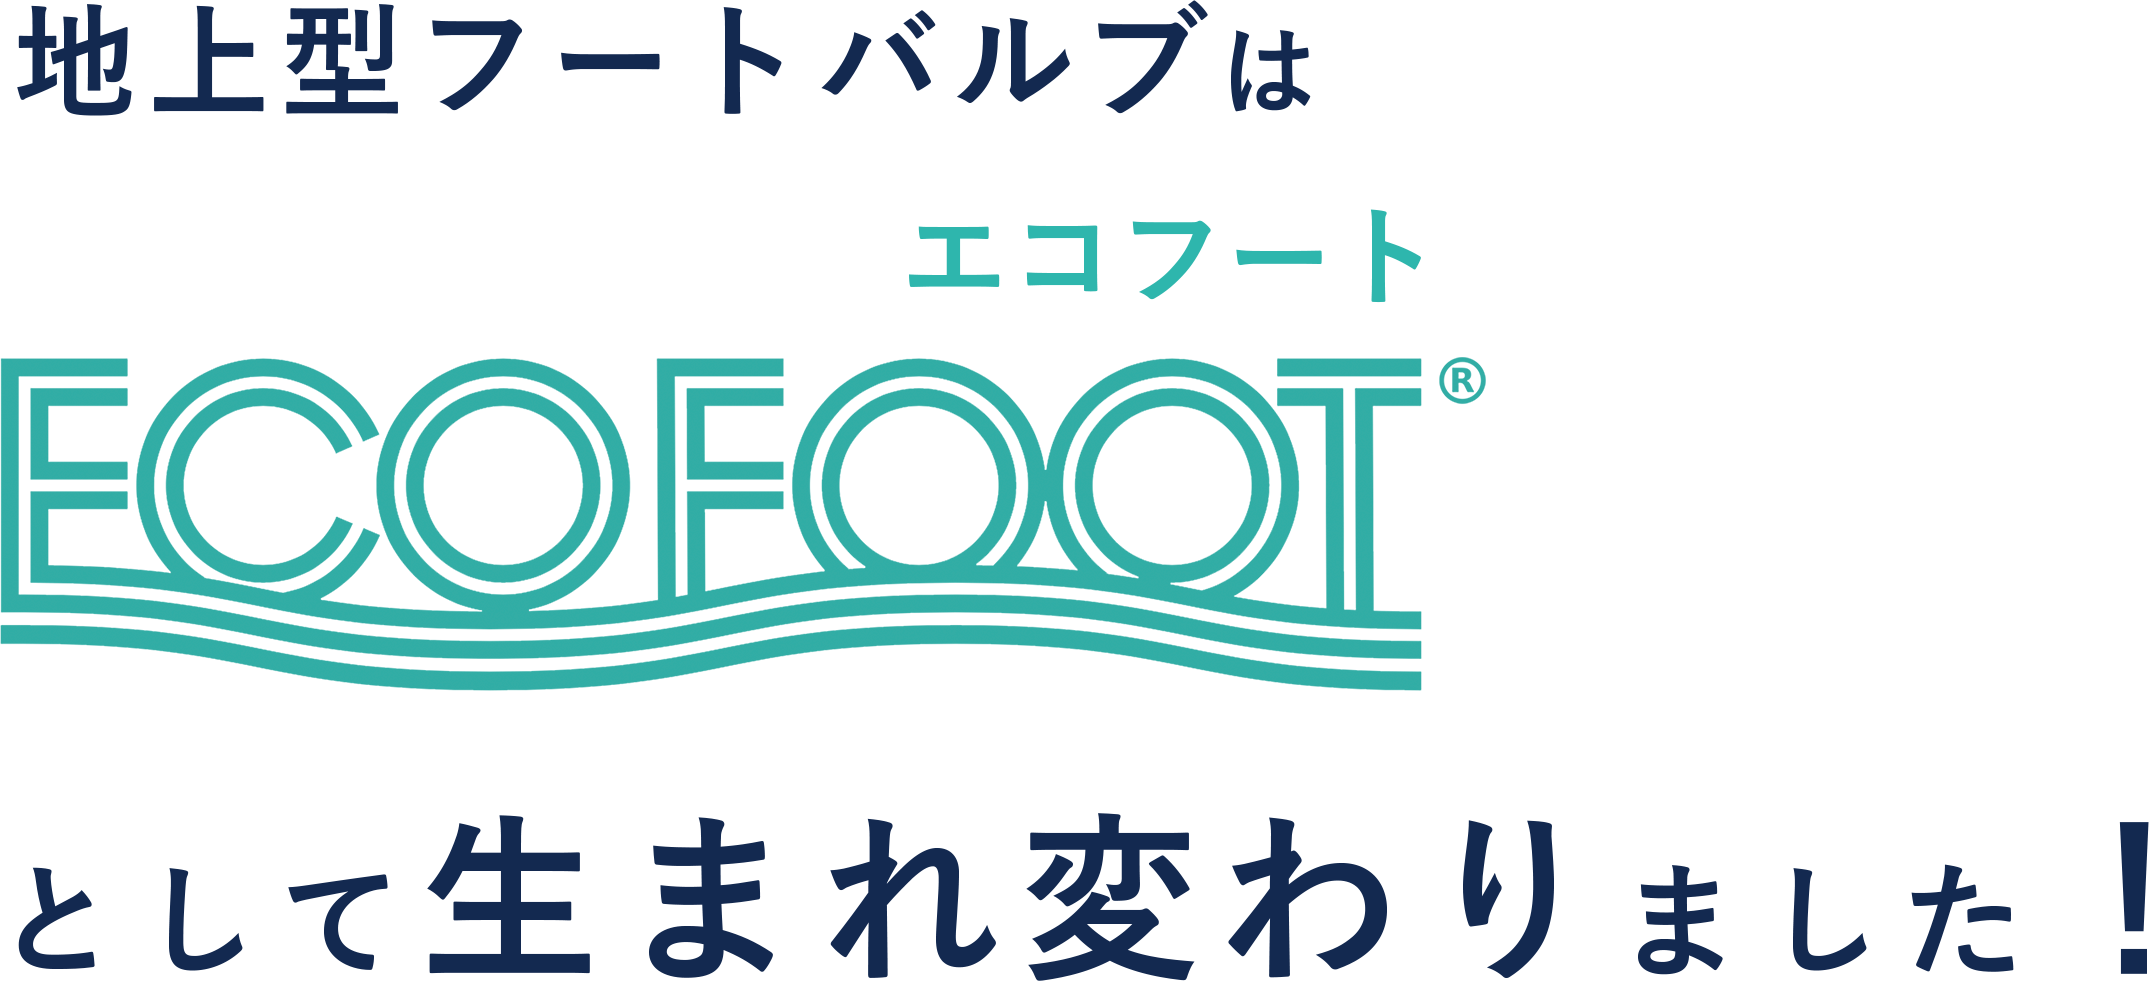 地上型フートバルブはECO FOOT エコフートとして生まれ変わりました。